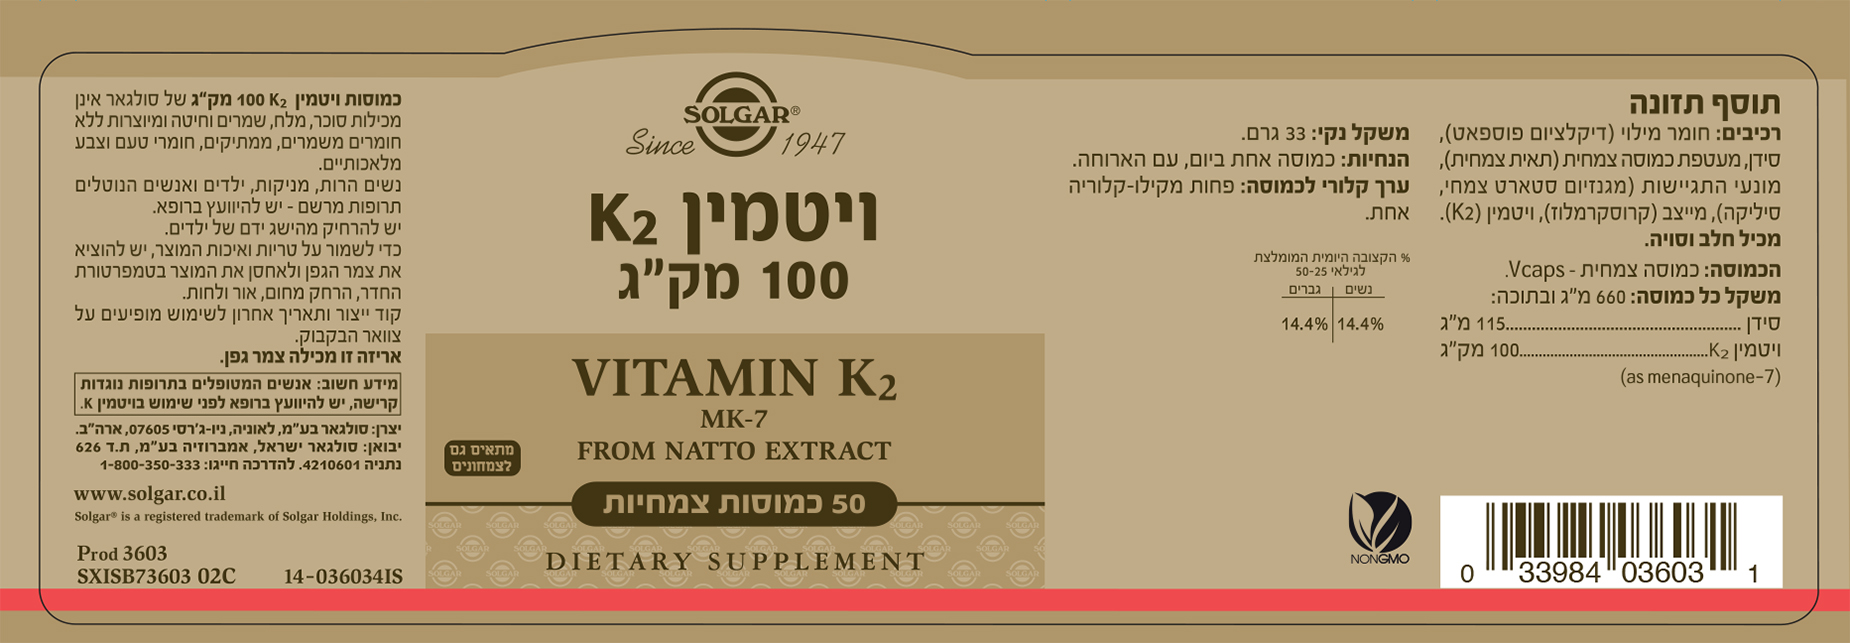 ויטמין K2 במינון 100 מק"ג